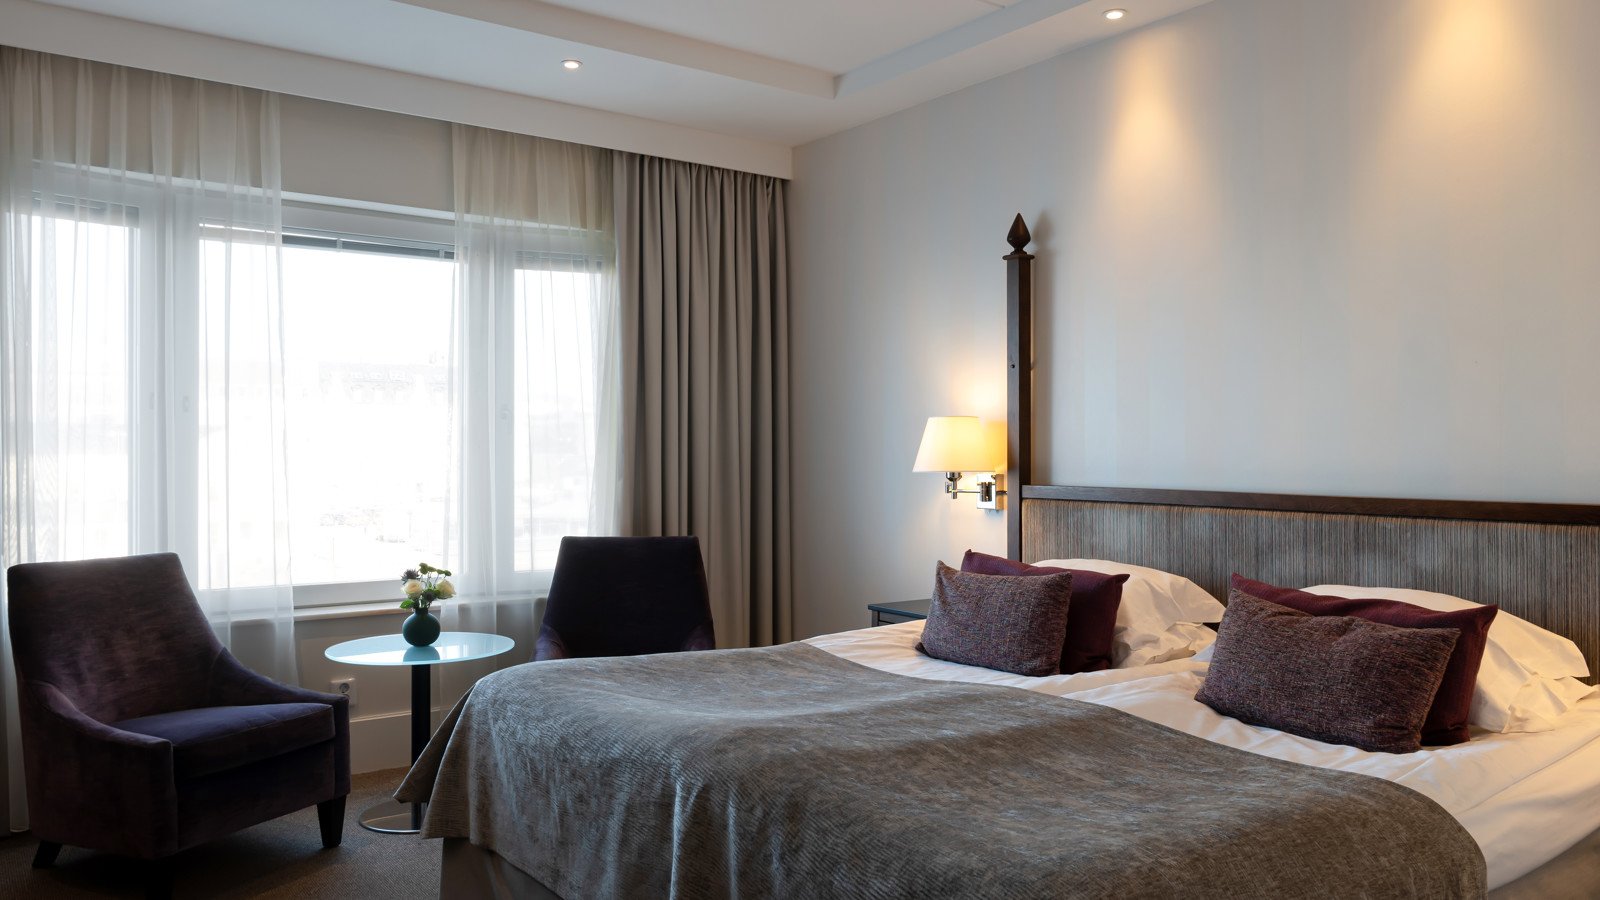 Hotellsäng med silvrigt överkast och lila kuddar